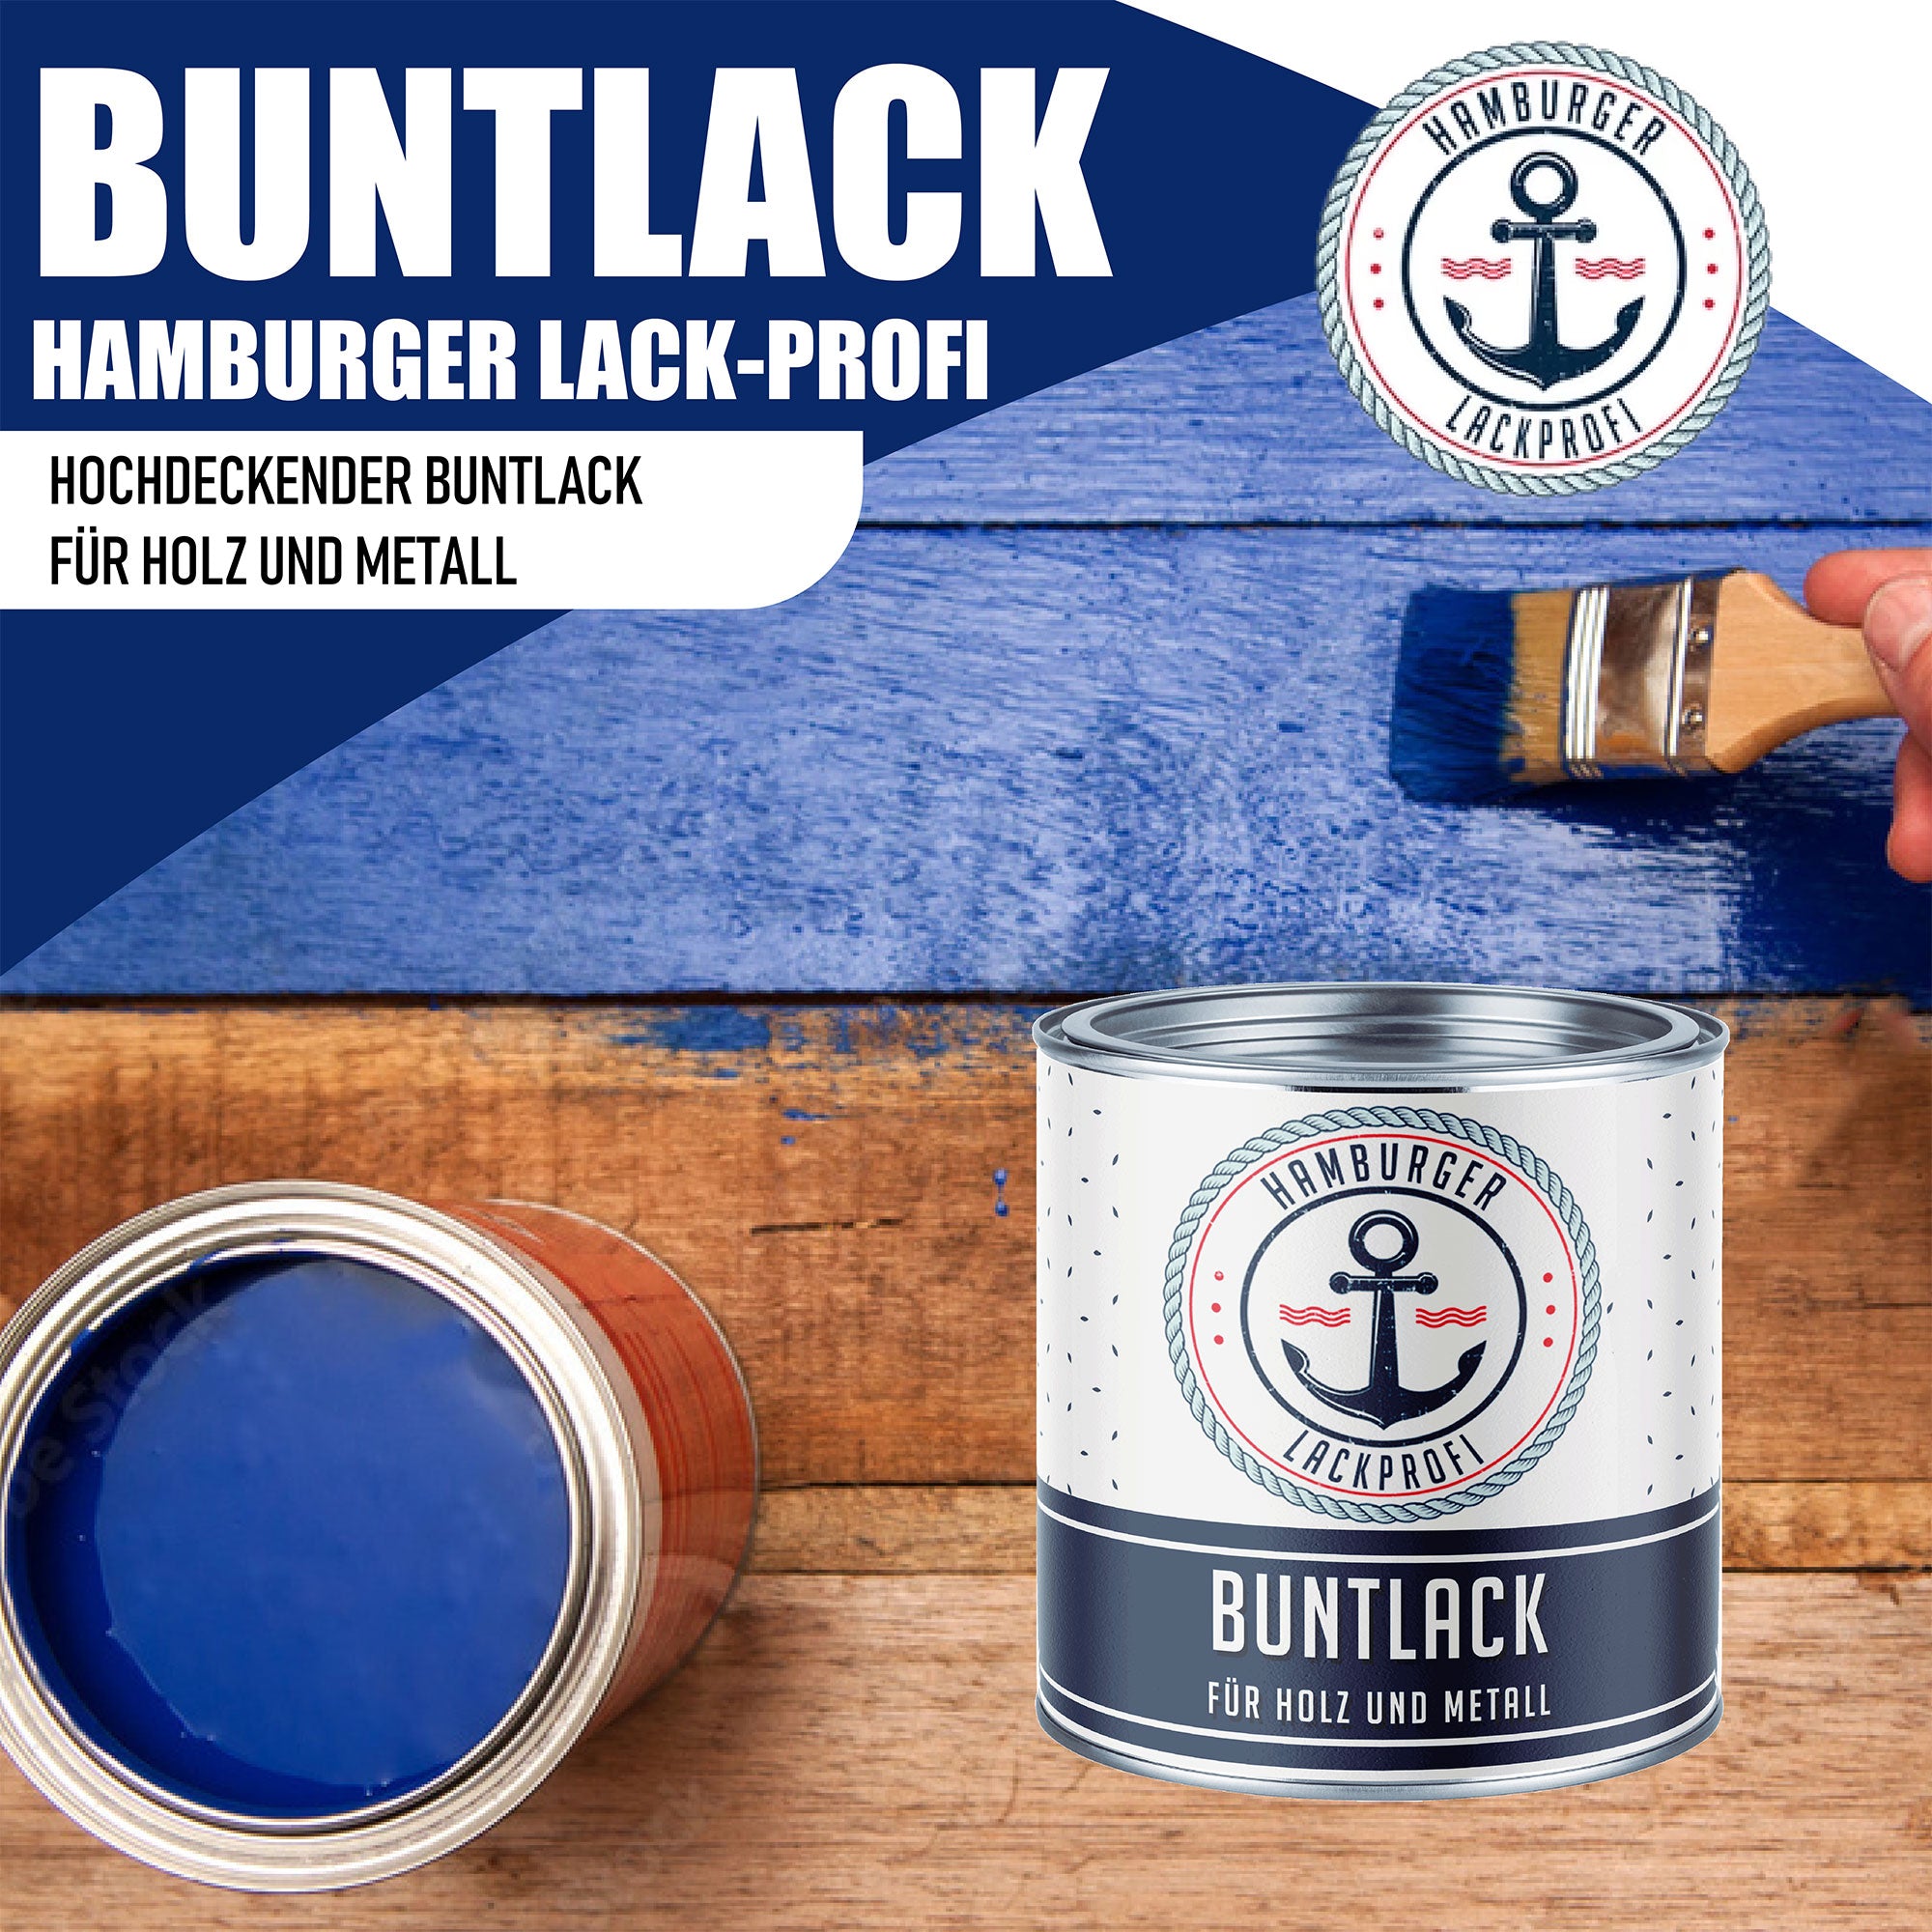 Hamburger Lack-Profi Buntlack in Schwarzblau RAL 5004 mit Lackierset (X300) & Verdünnung (1 L) - 30% Sparangebot